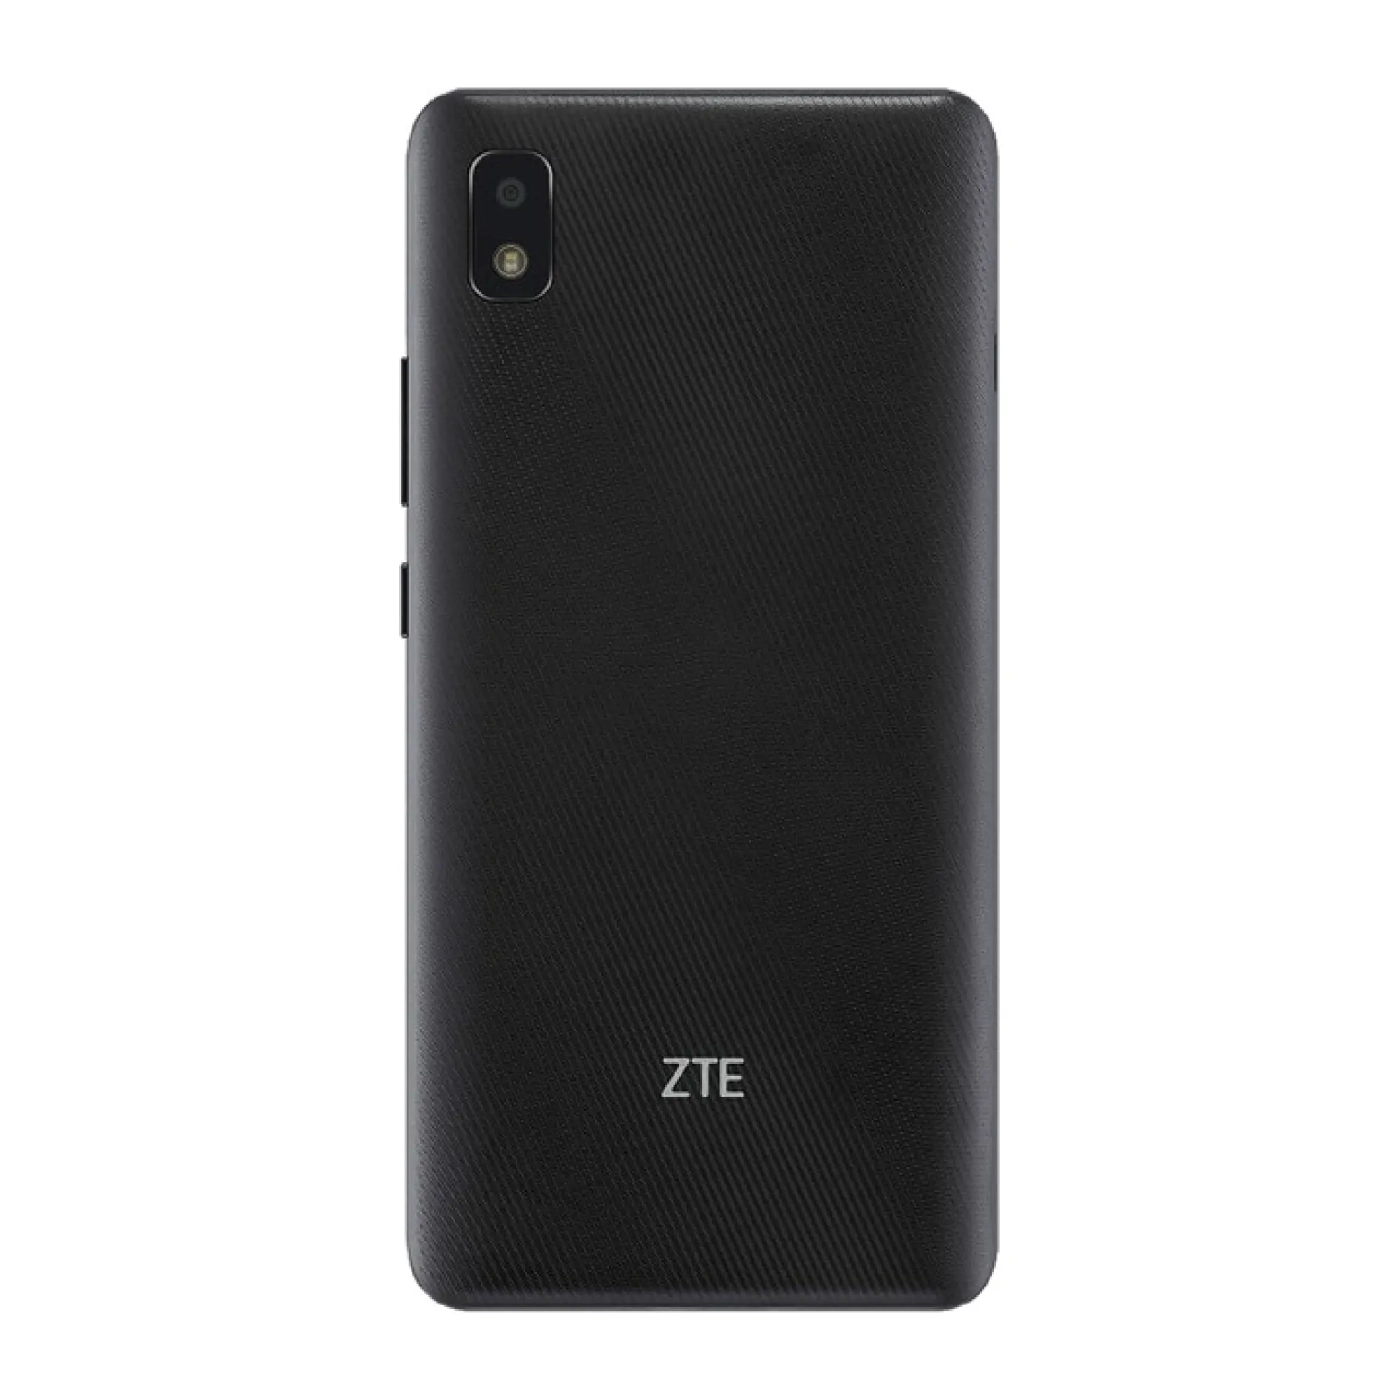 Купить Смартфон ZTE Blade L210 1/32GB Black (661249) - фото 3